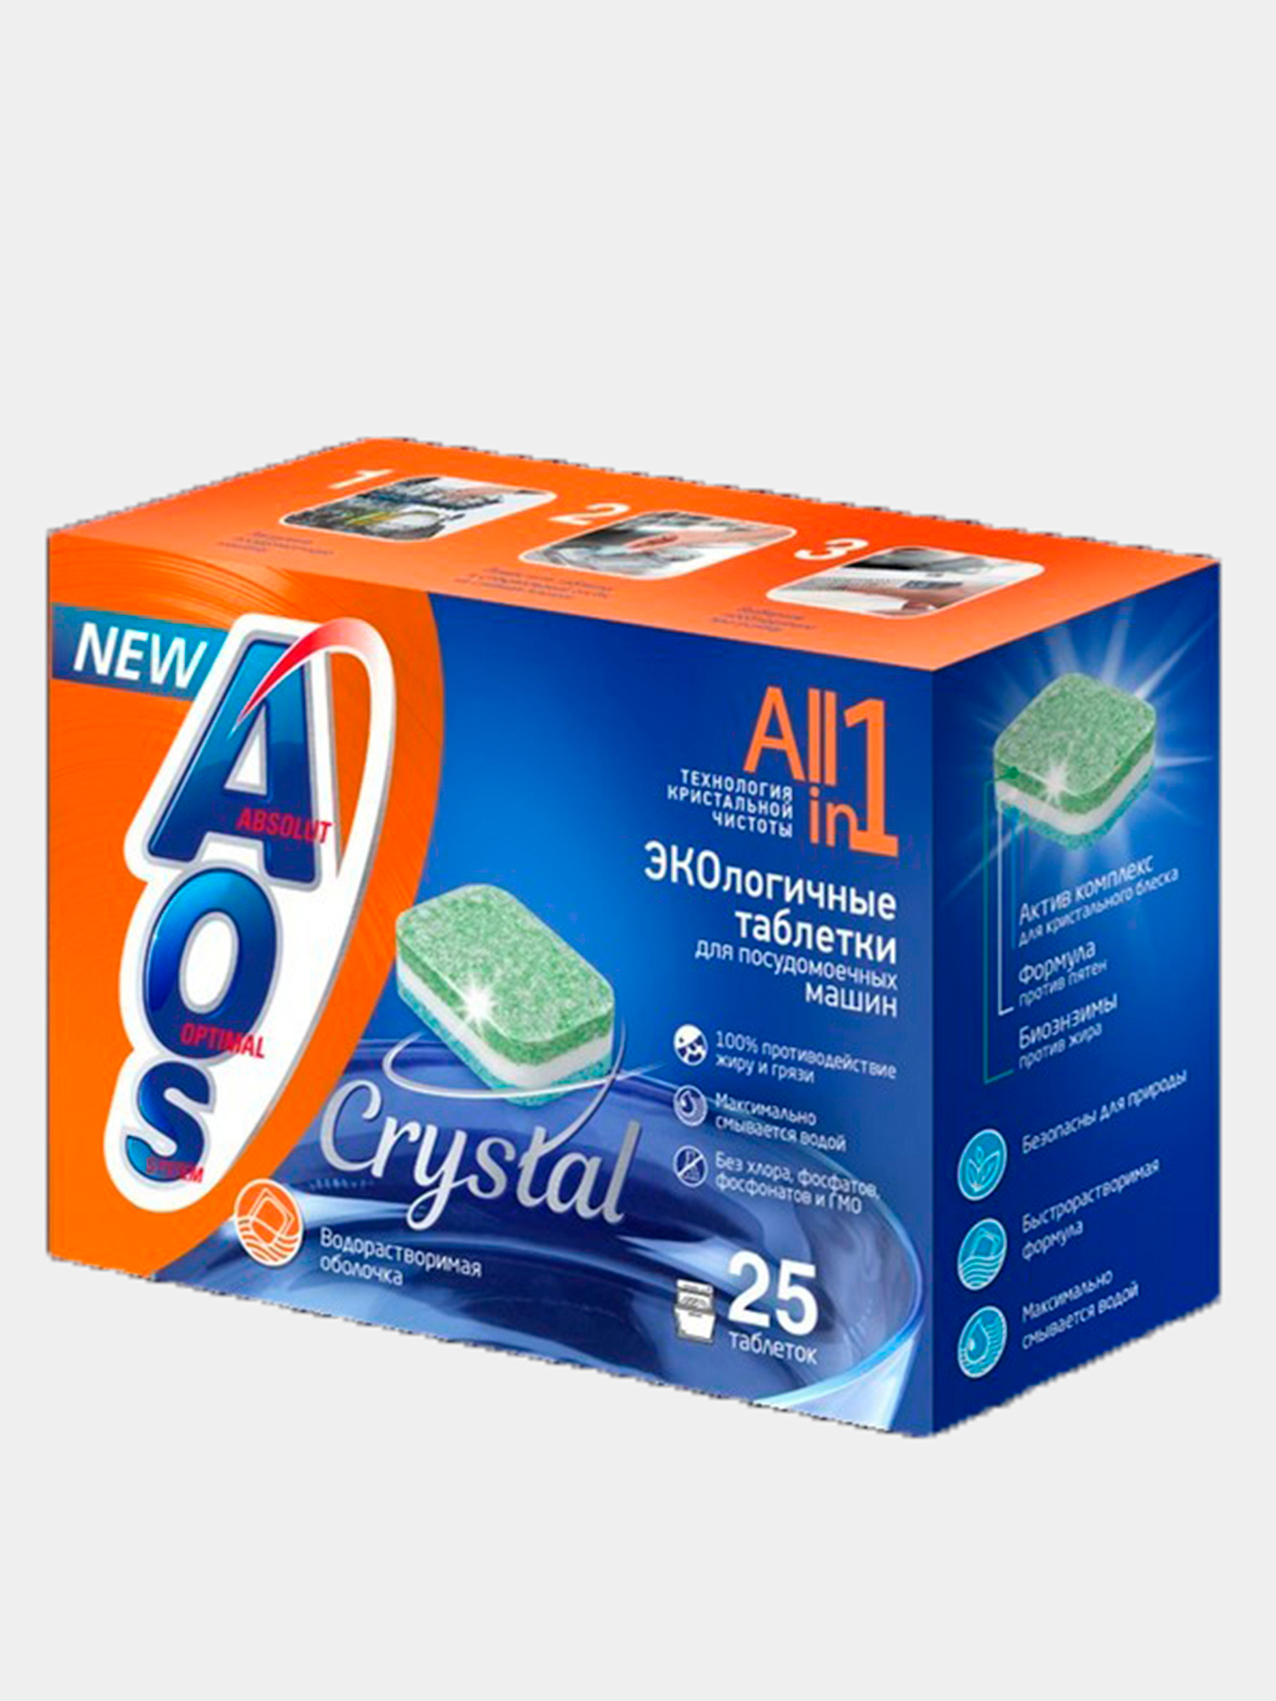 AOS crystal ЭКОлогичные таблетки для посудомоечных машин 25шт за 399 .